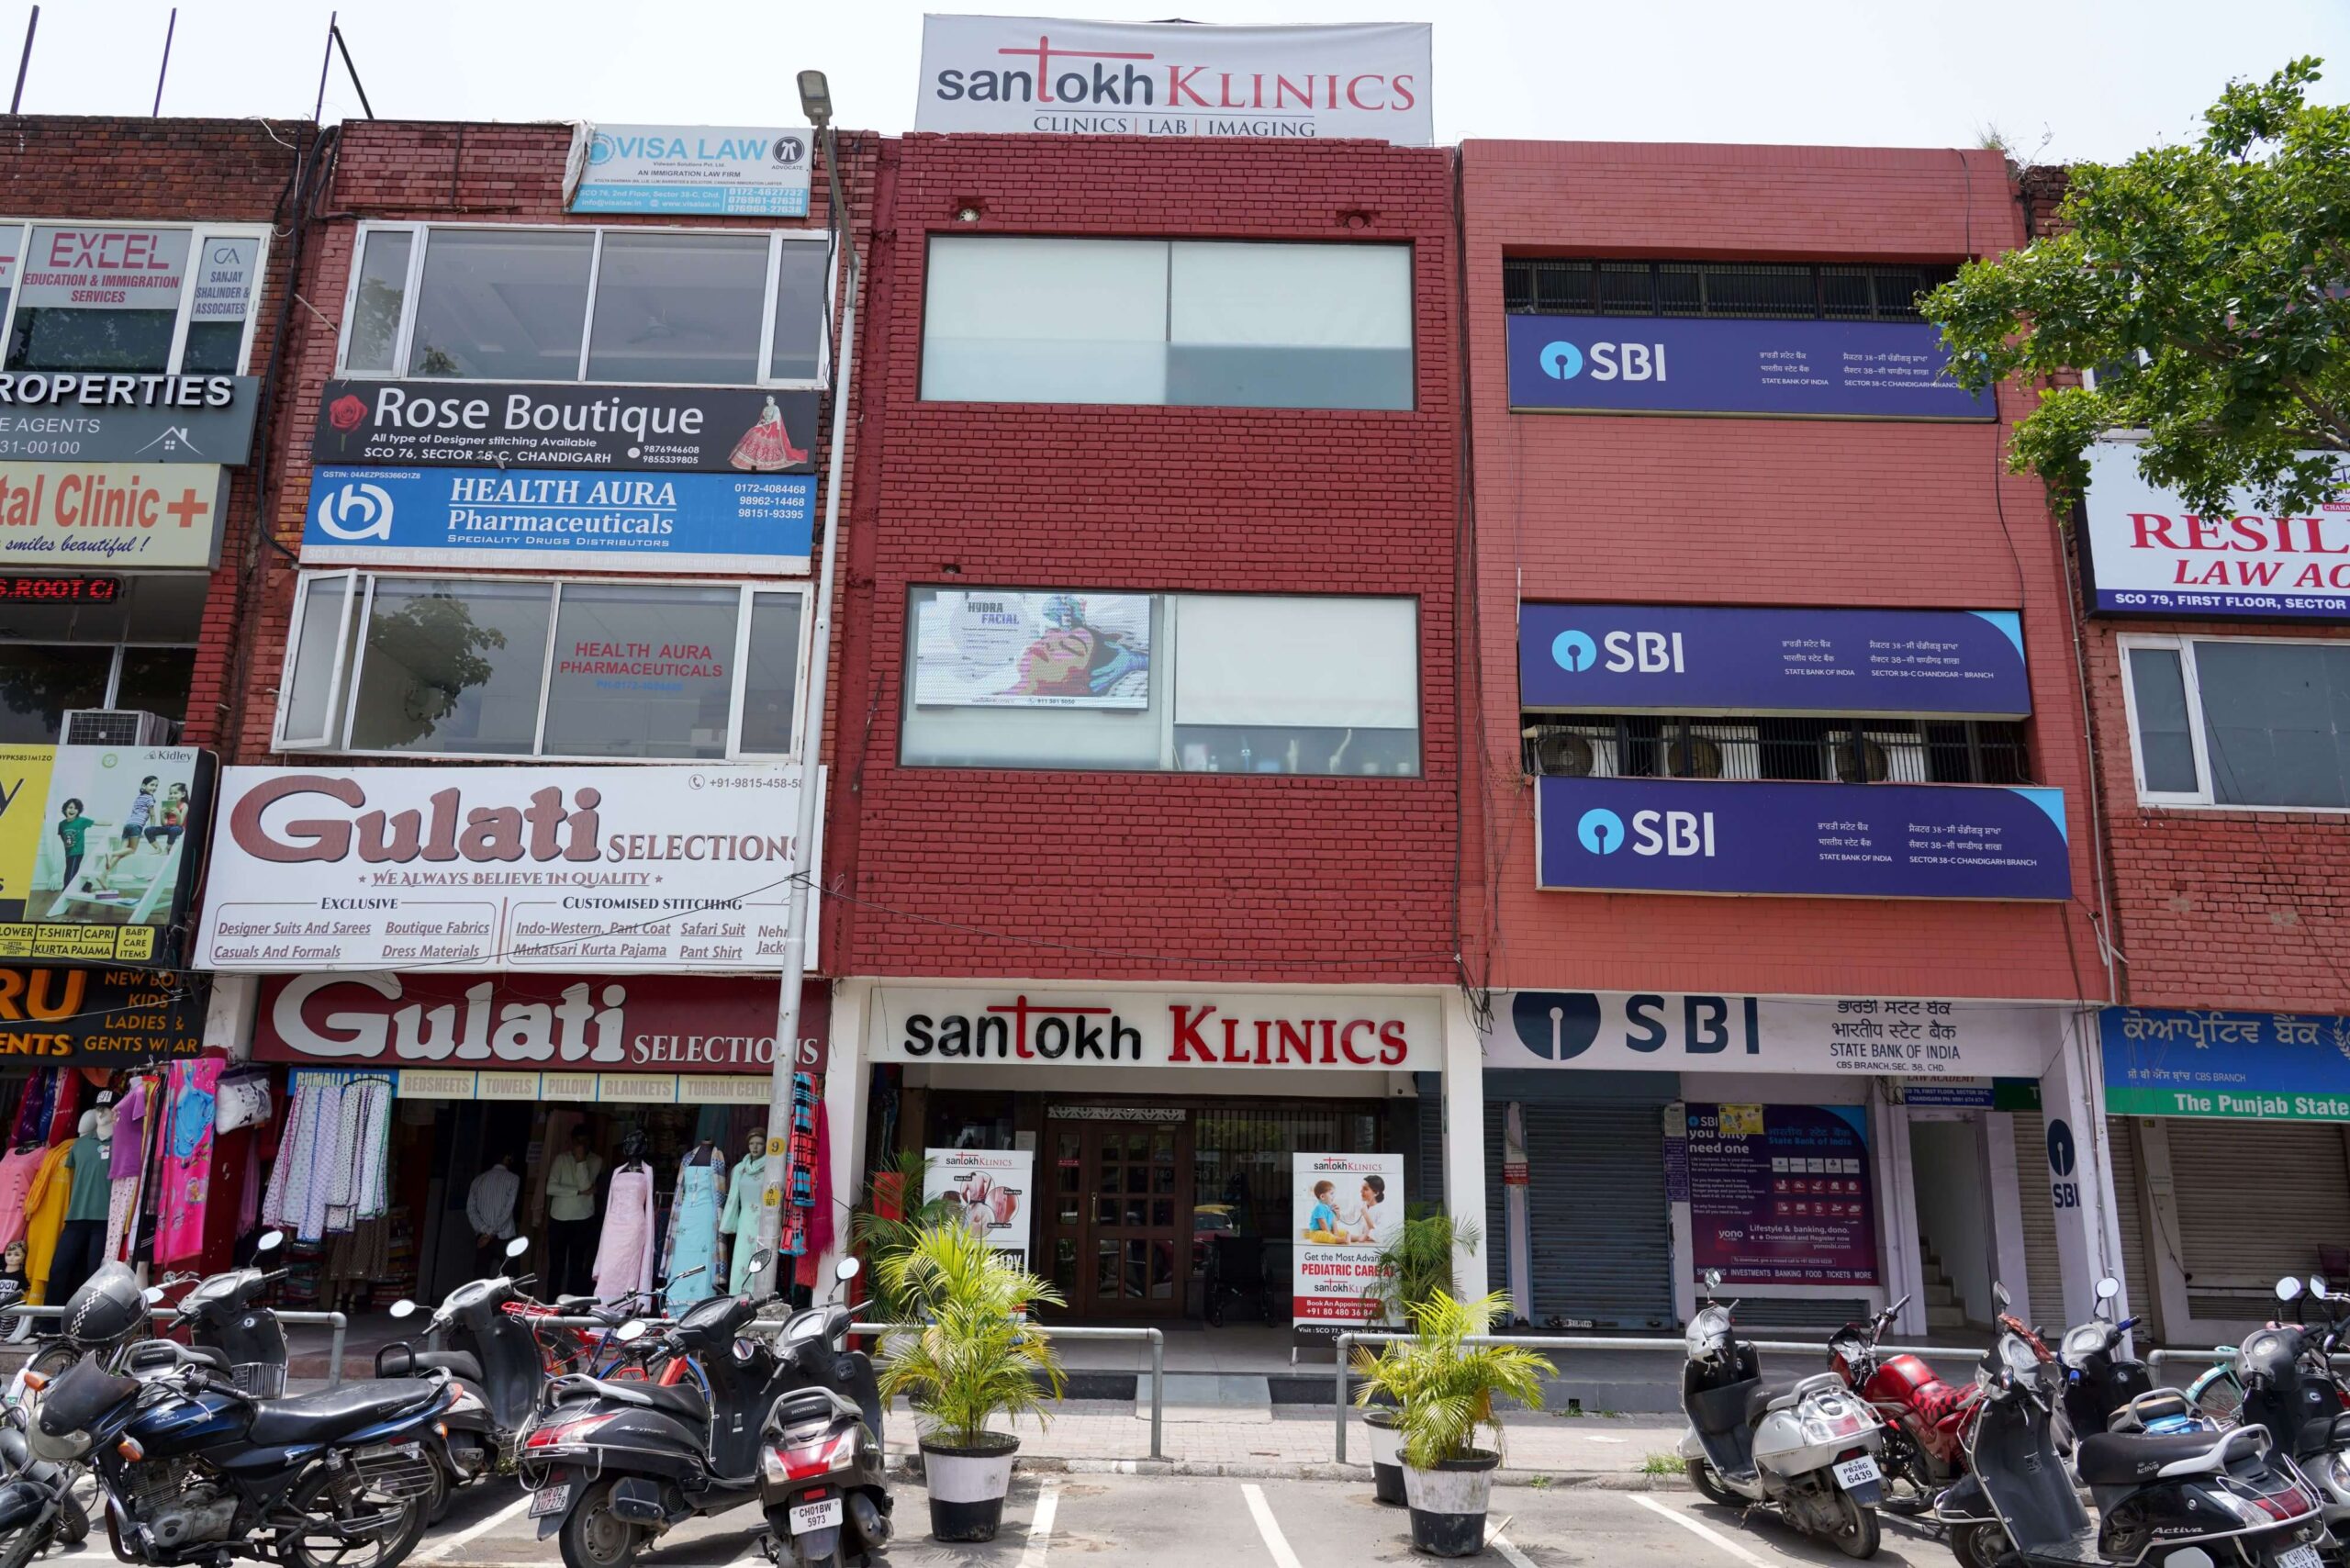 Santokh Klinics